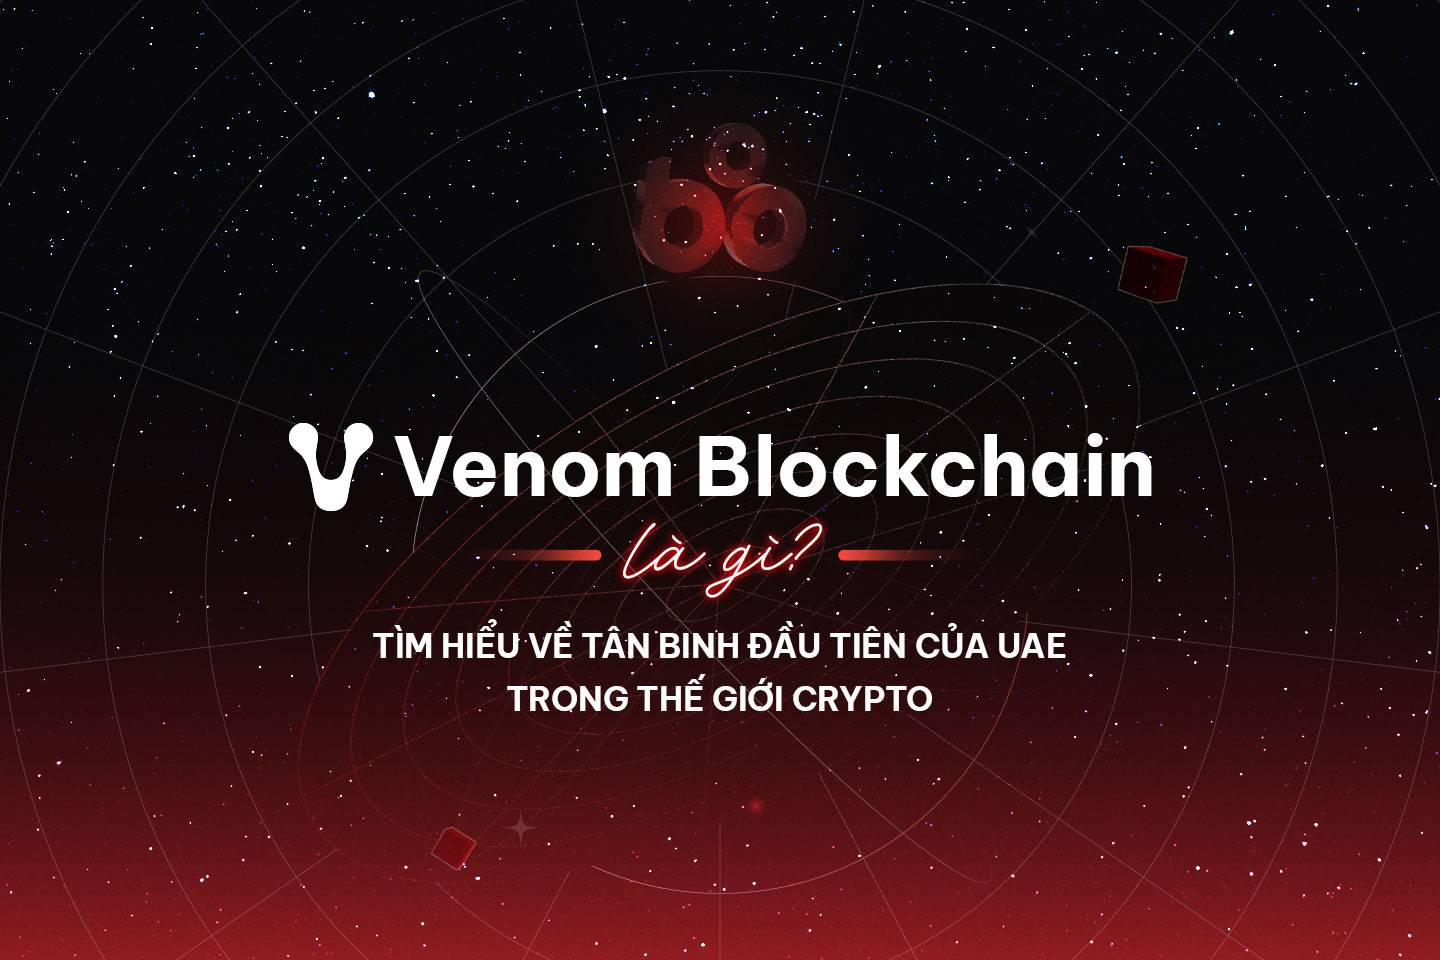 Venom Blockchain là gì? Tìm hiểu về tân binh đầu tiên trong thế giới Crypto của UAE